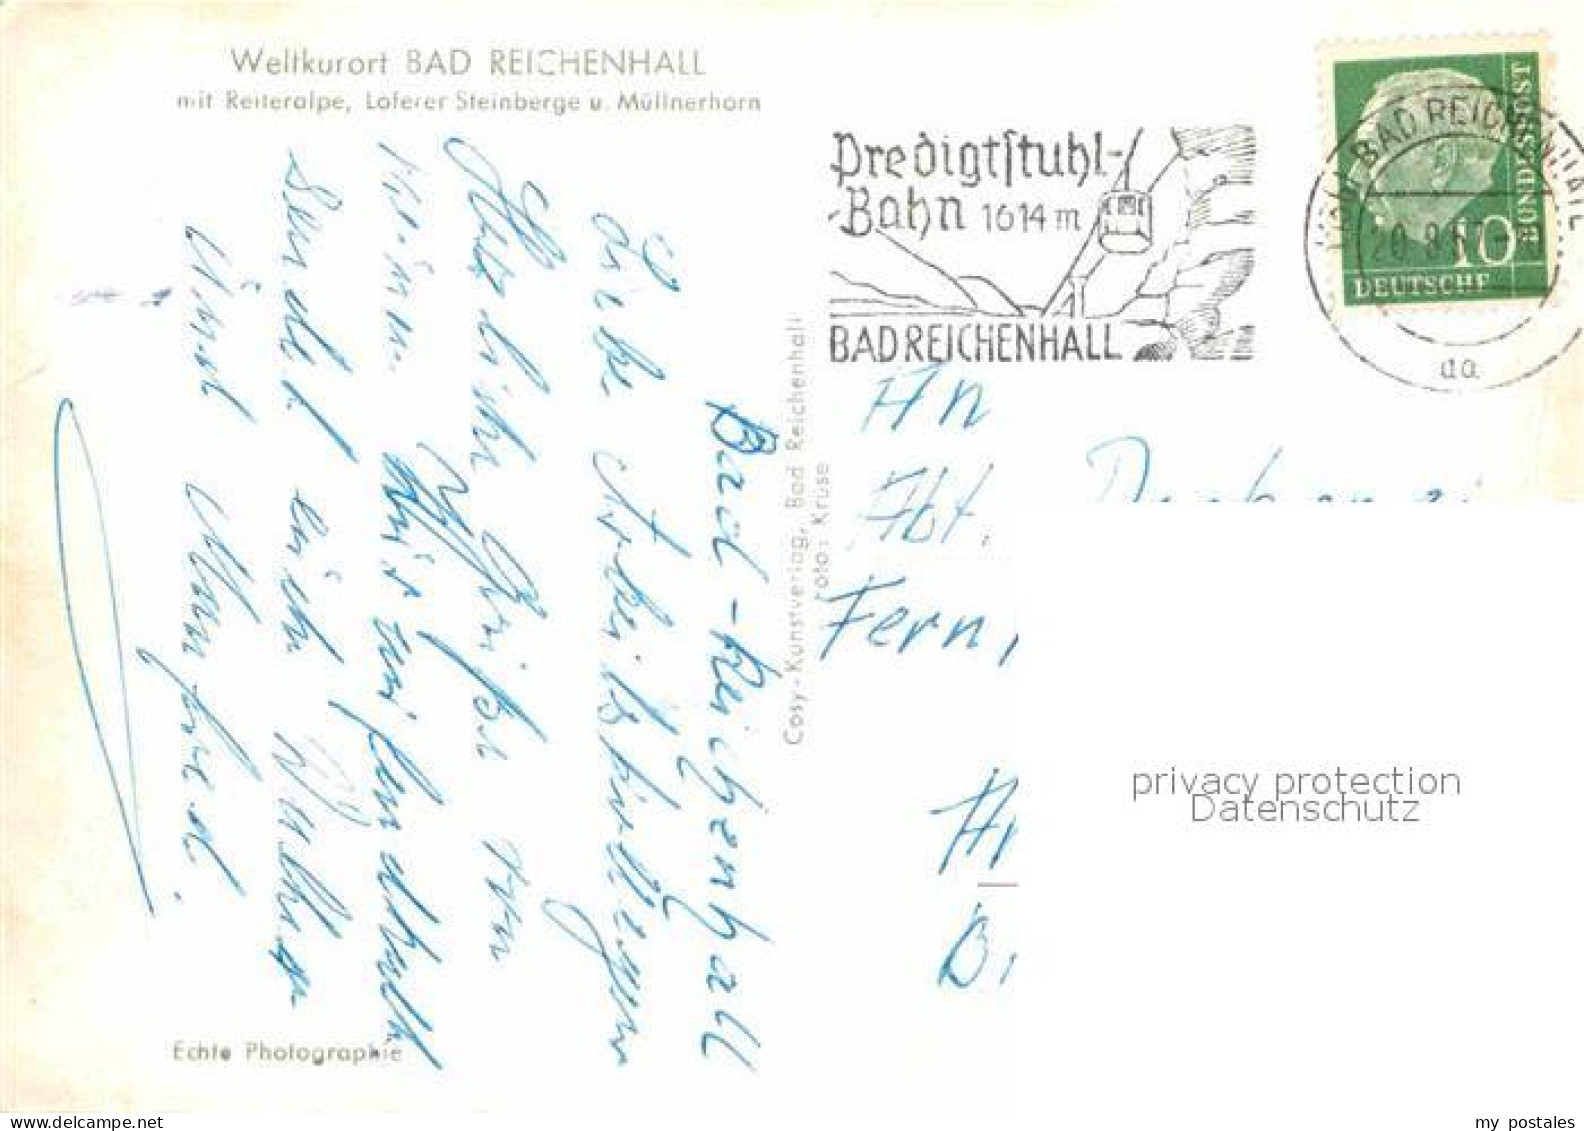 72790827 Bad Reichenhall Reiteralpe Loferer Steinberge Muellnerhorn Bad Reichenh - Bad Reichenhall